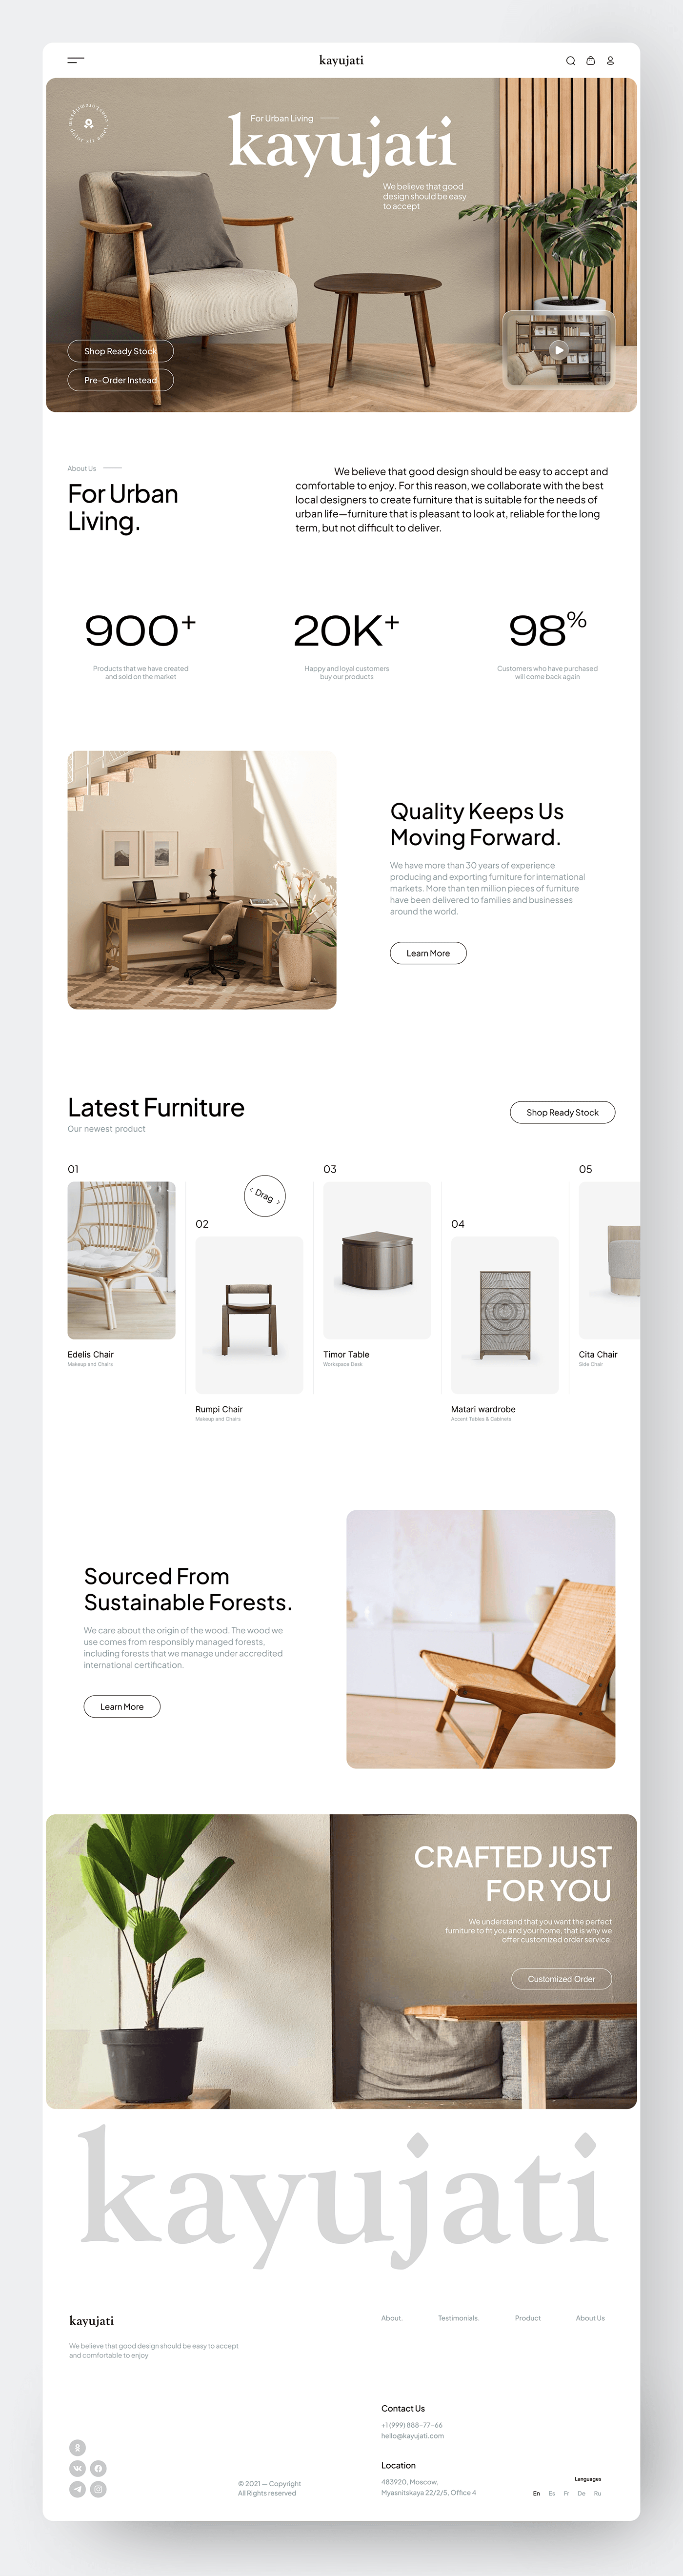 Kayujati - Furniture Landing Page Design